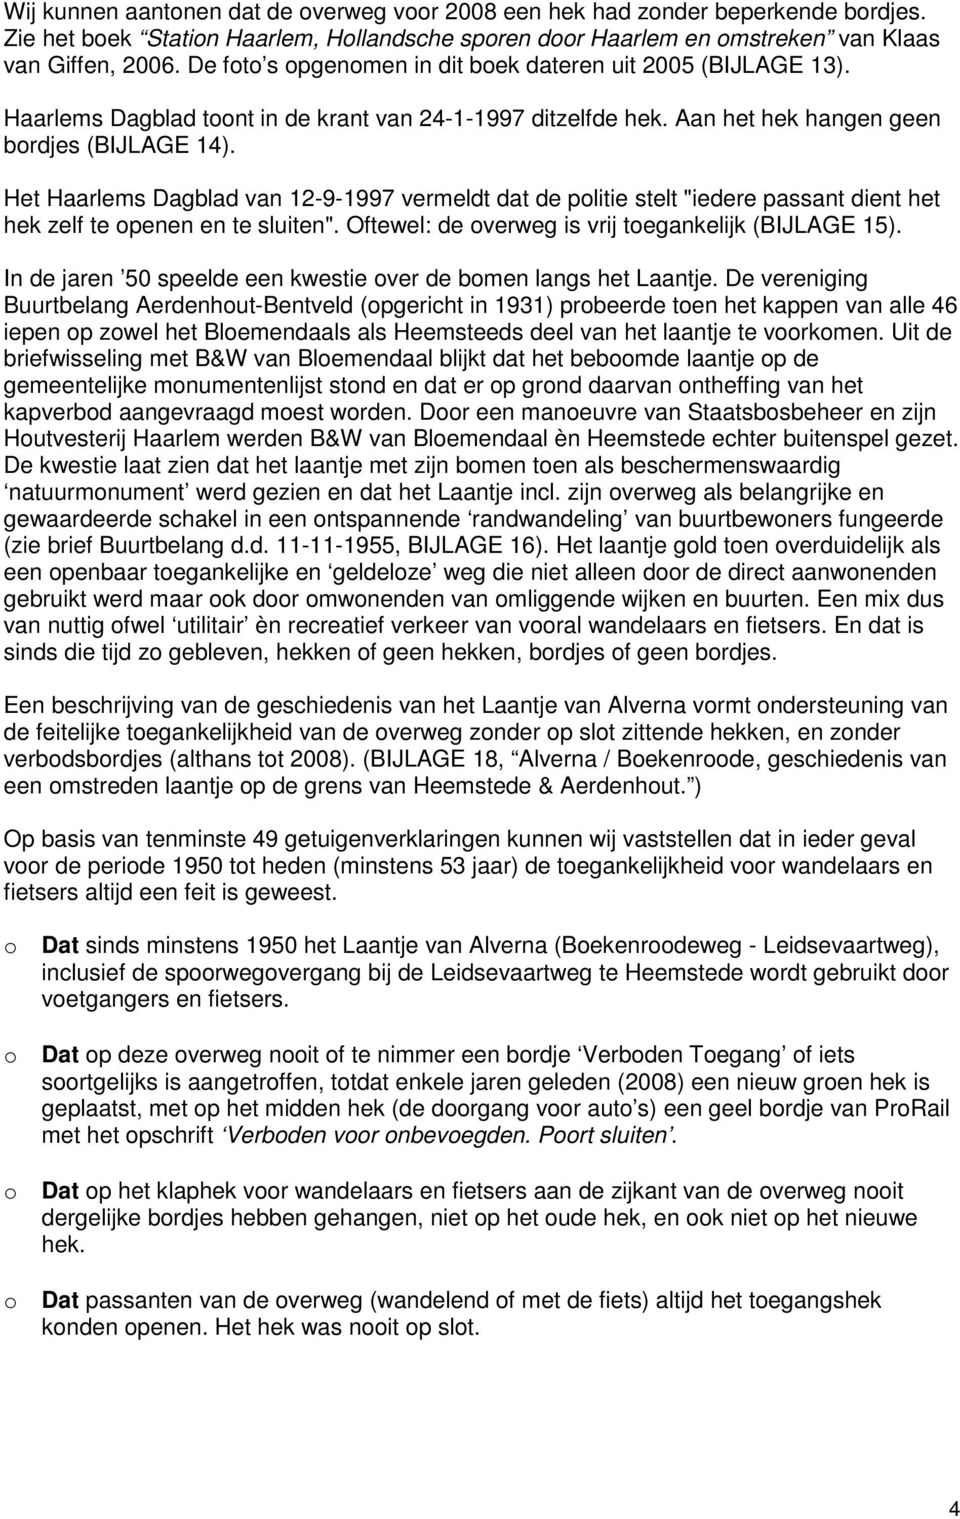 Het Haarlems Dagblad van 12-9-1997 vermeldt dat de politie stelt "iedere passant dient het hek zelf te openen en te sluiten". Oftewel: de overweg is vrij toegankelijk (BIJLAGE 15).